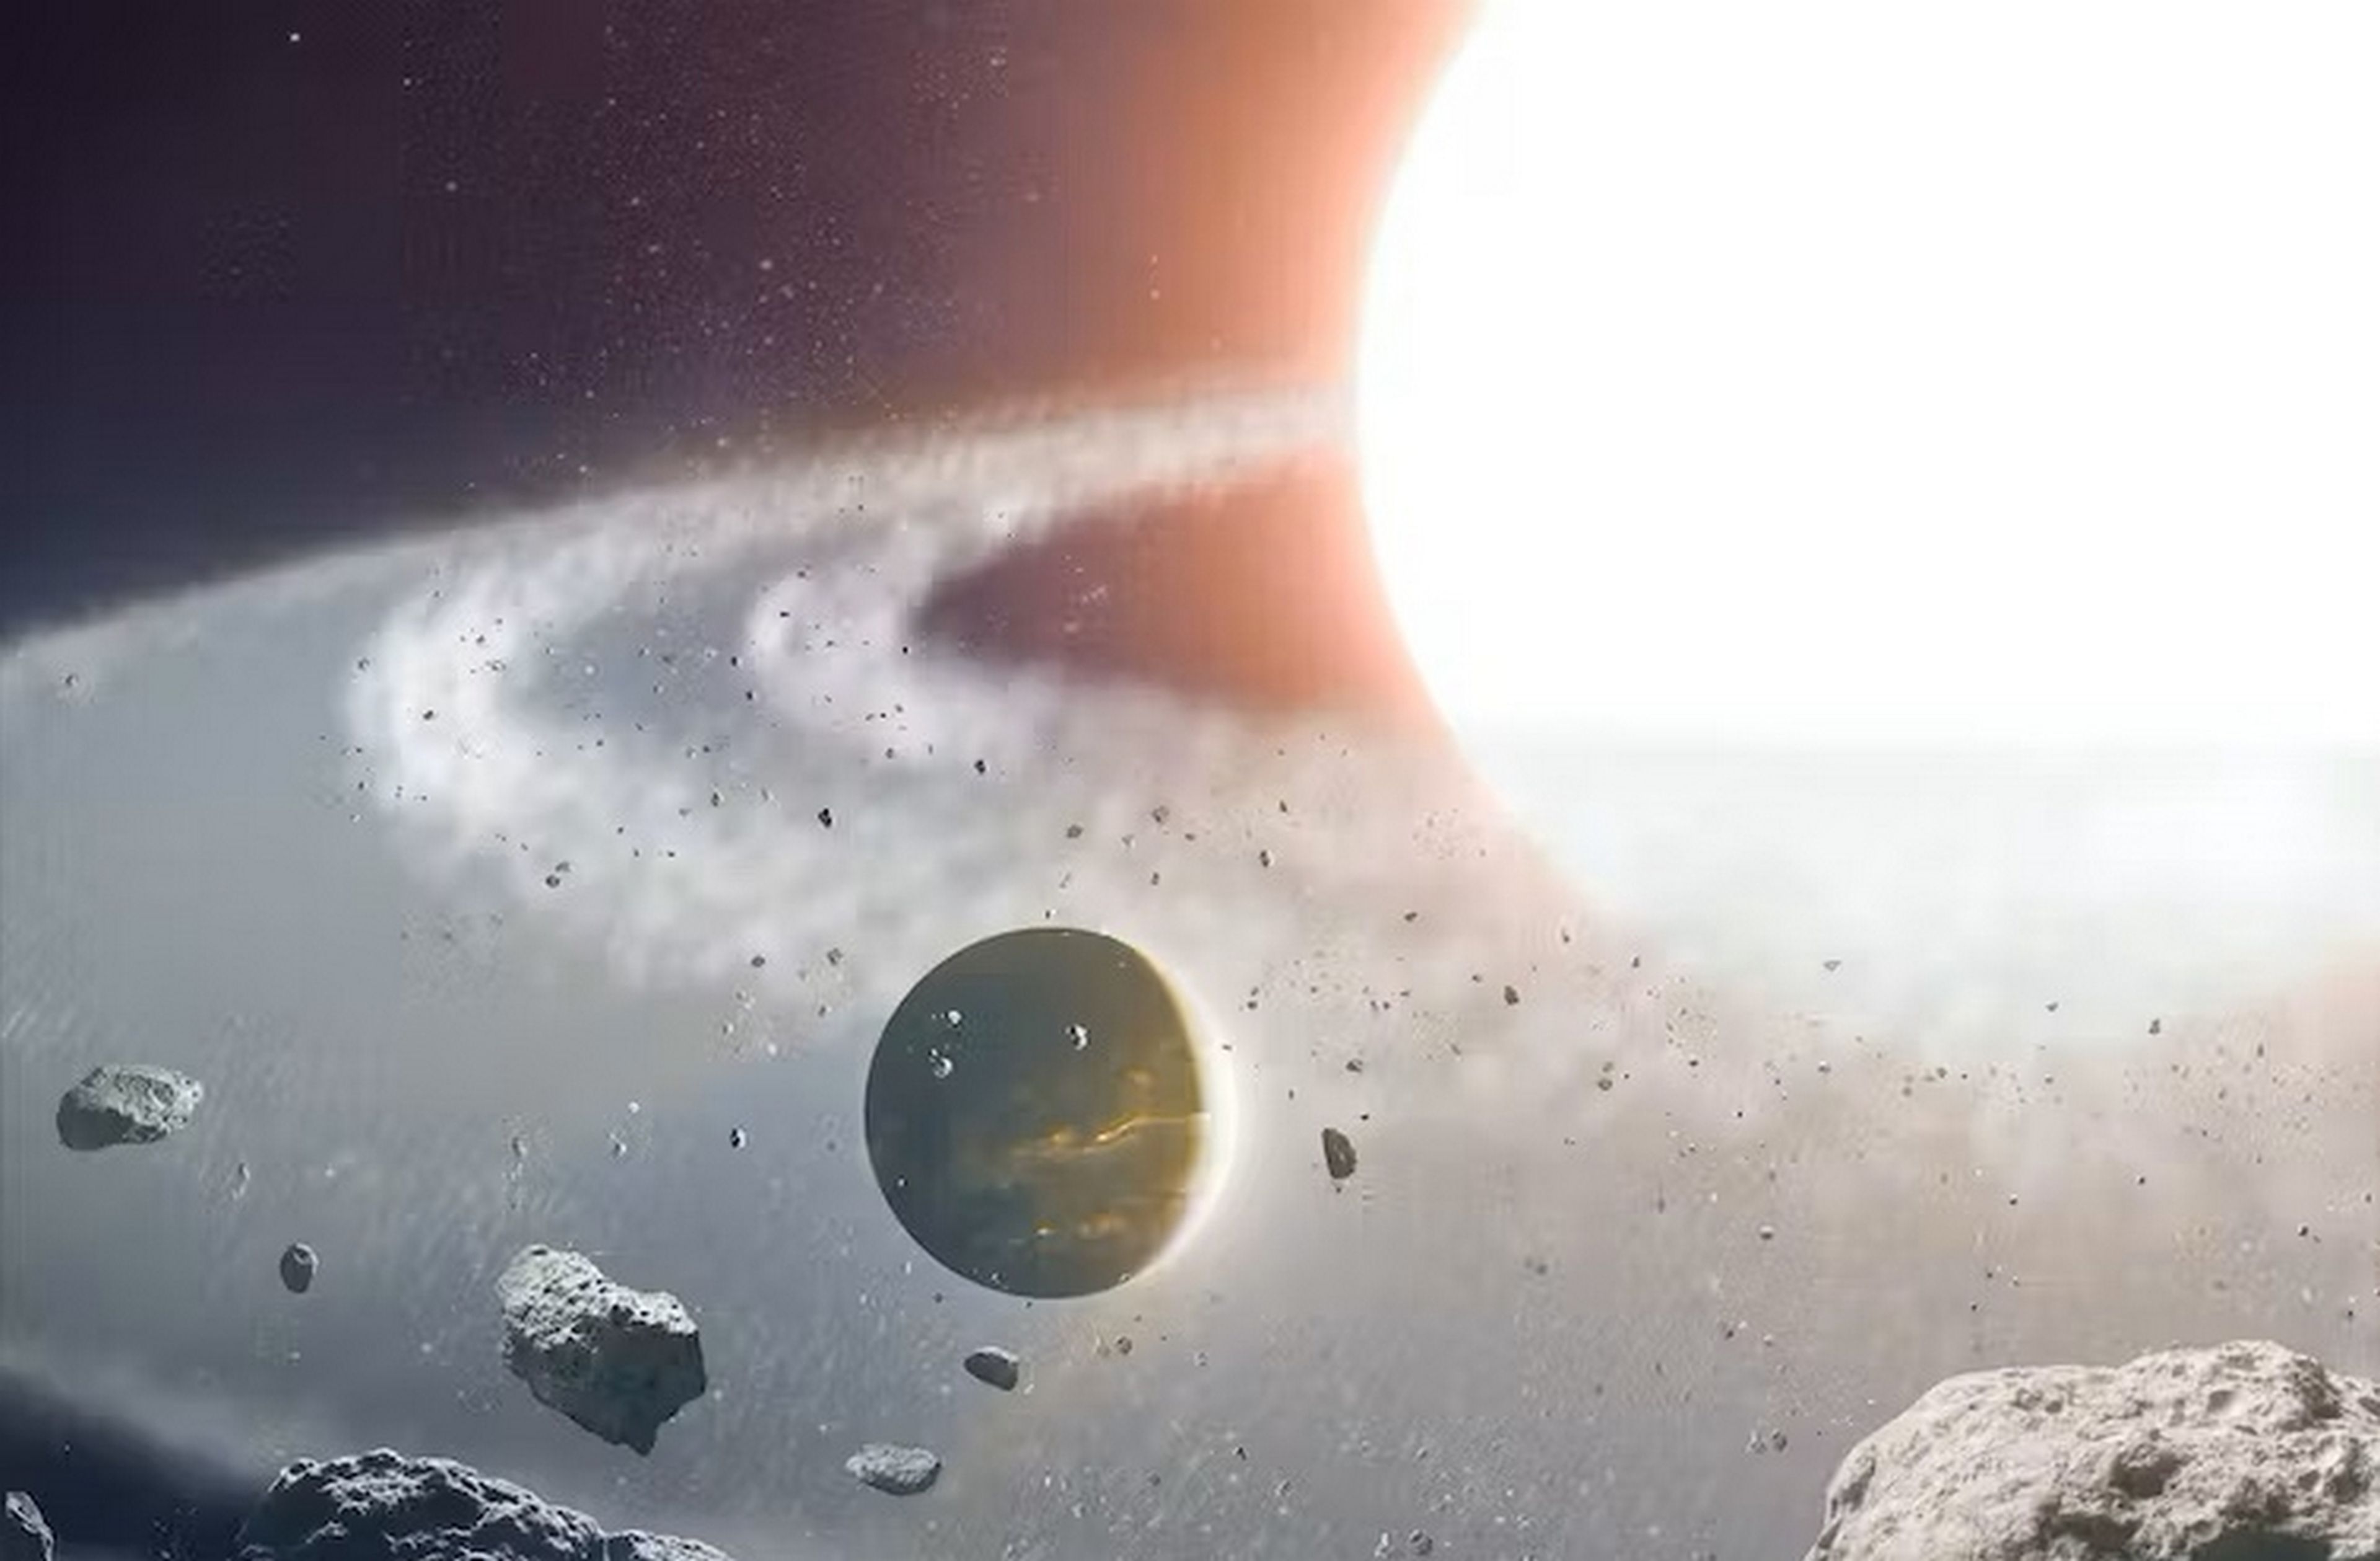 Los astrónomos estás desconcertados porque han descubierto un planeta que no debería existir